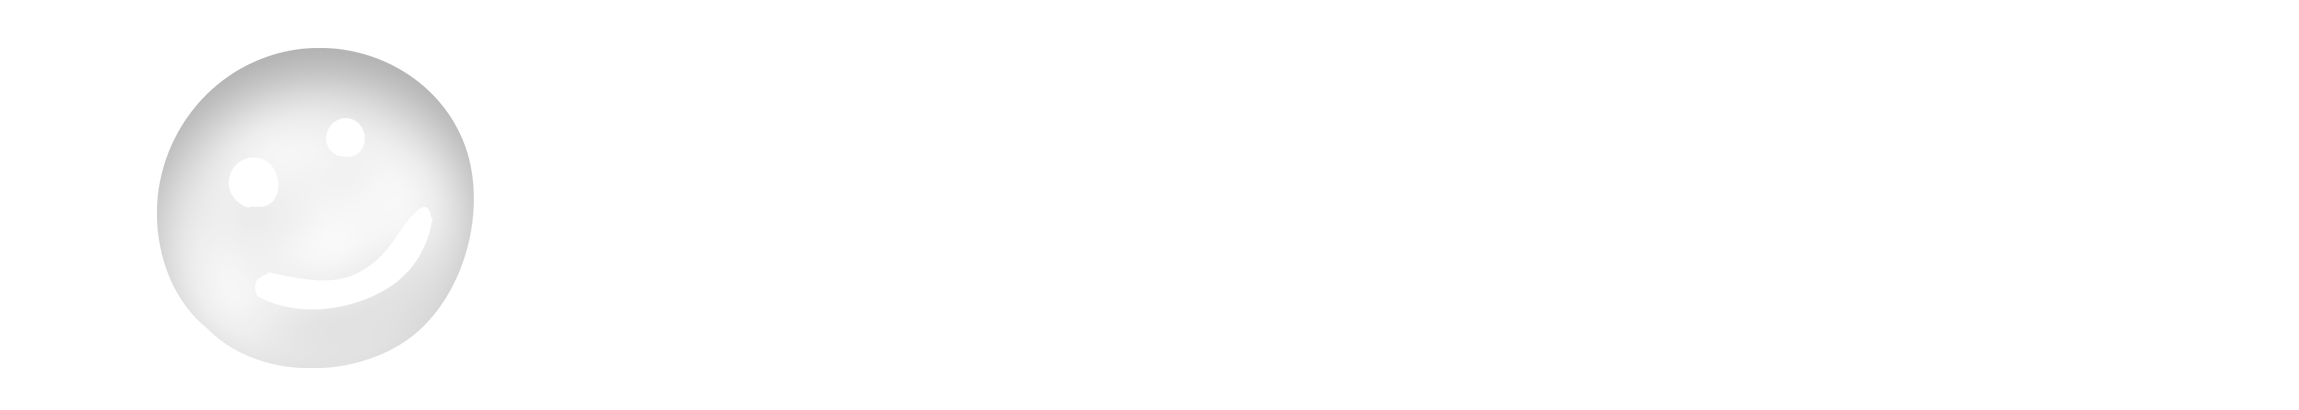 Friendstrs Logo